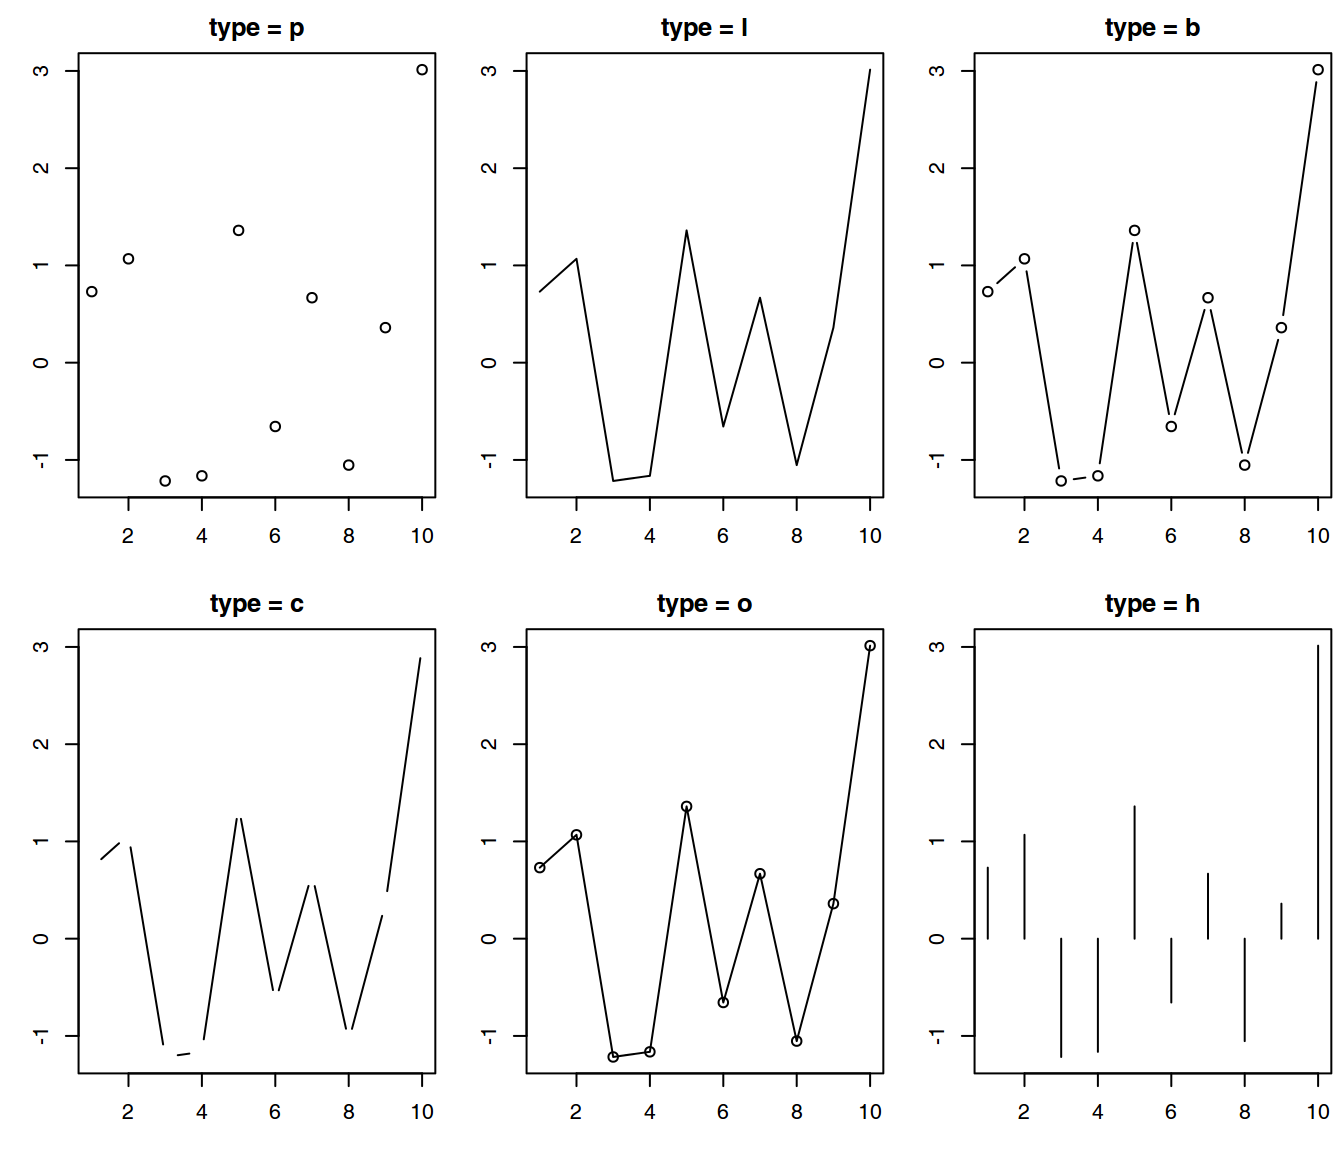 Representación de los mismos datos con la función *plot()* considerando diferentes argumentos para *type.*